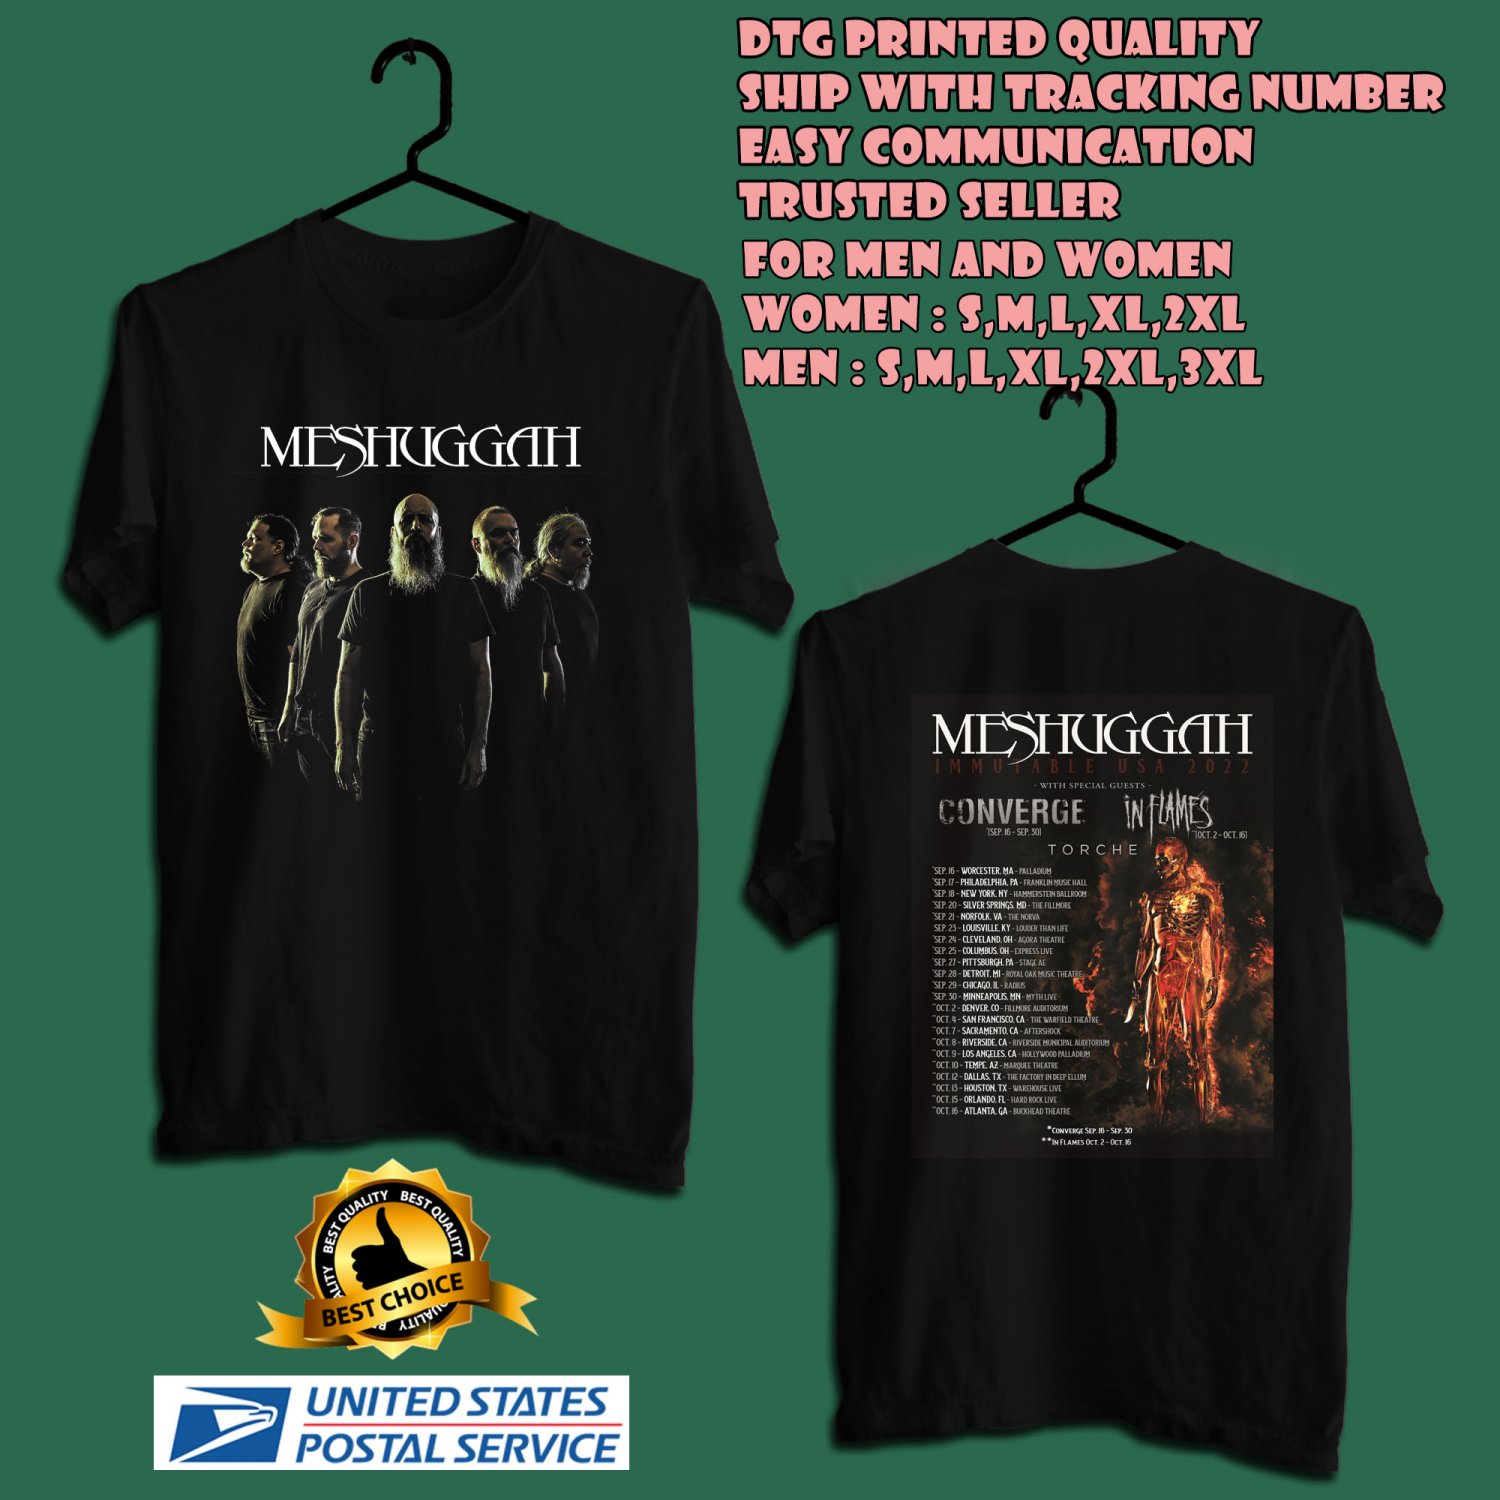 meshuggah immutable tour shirt